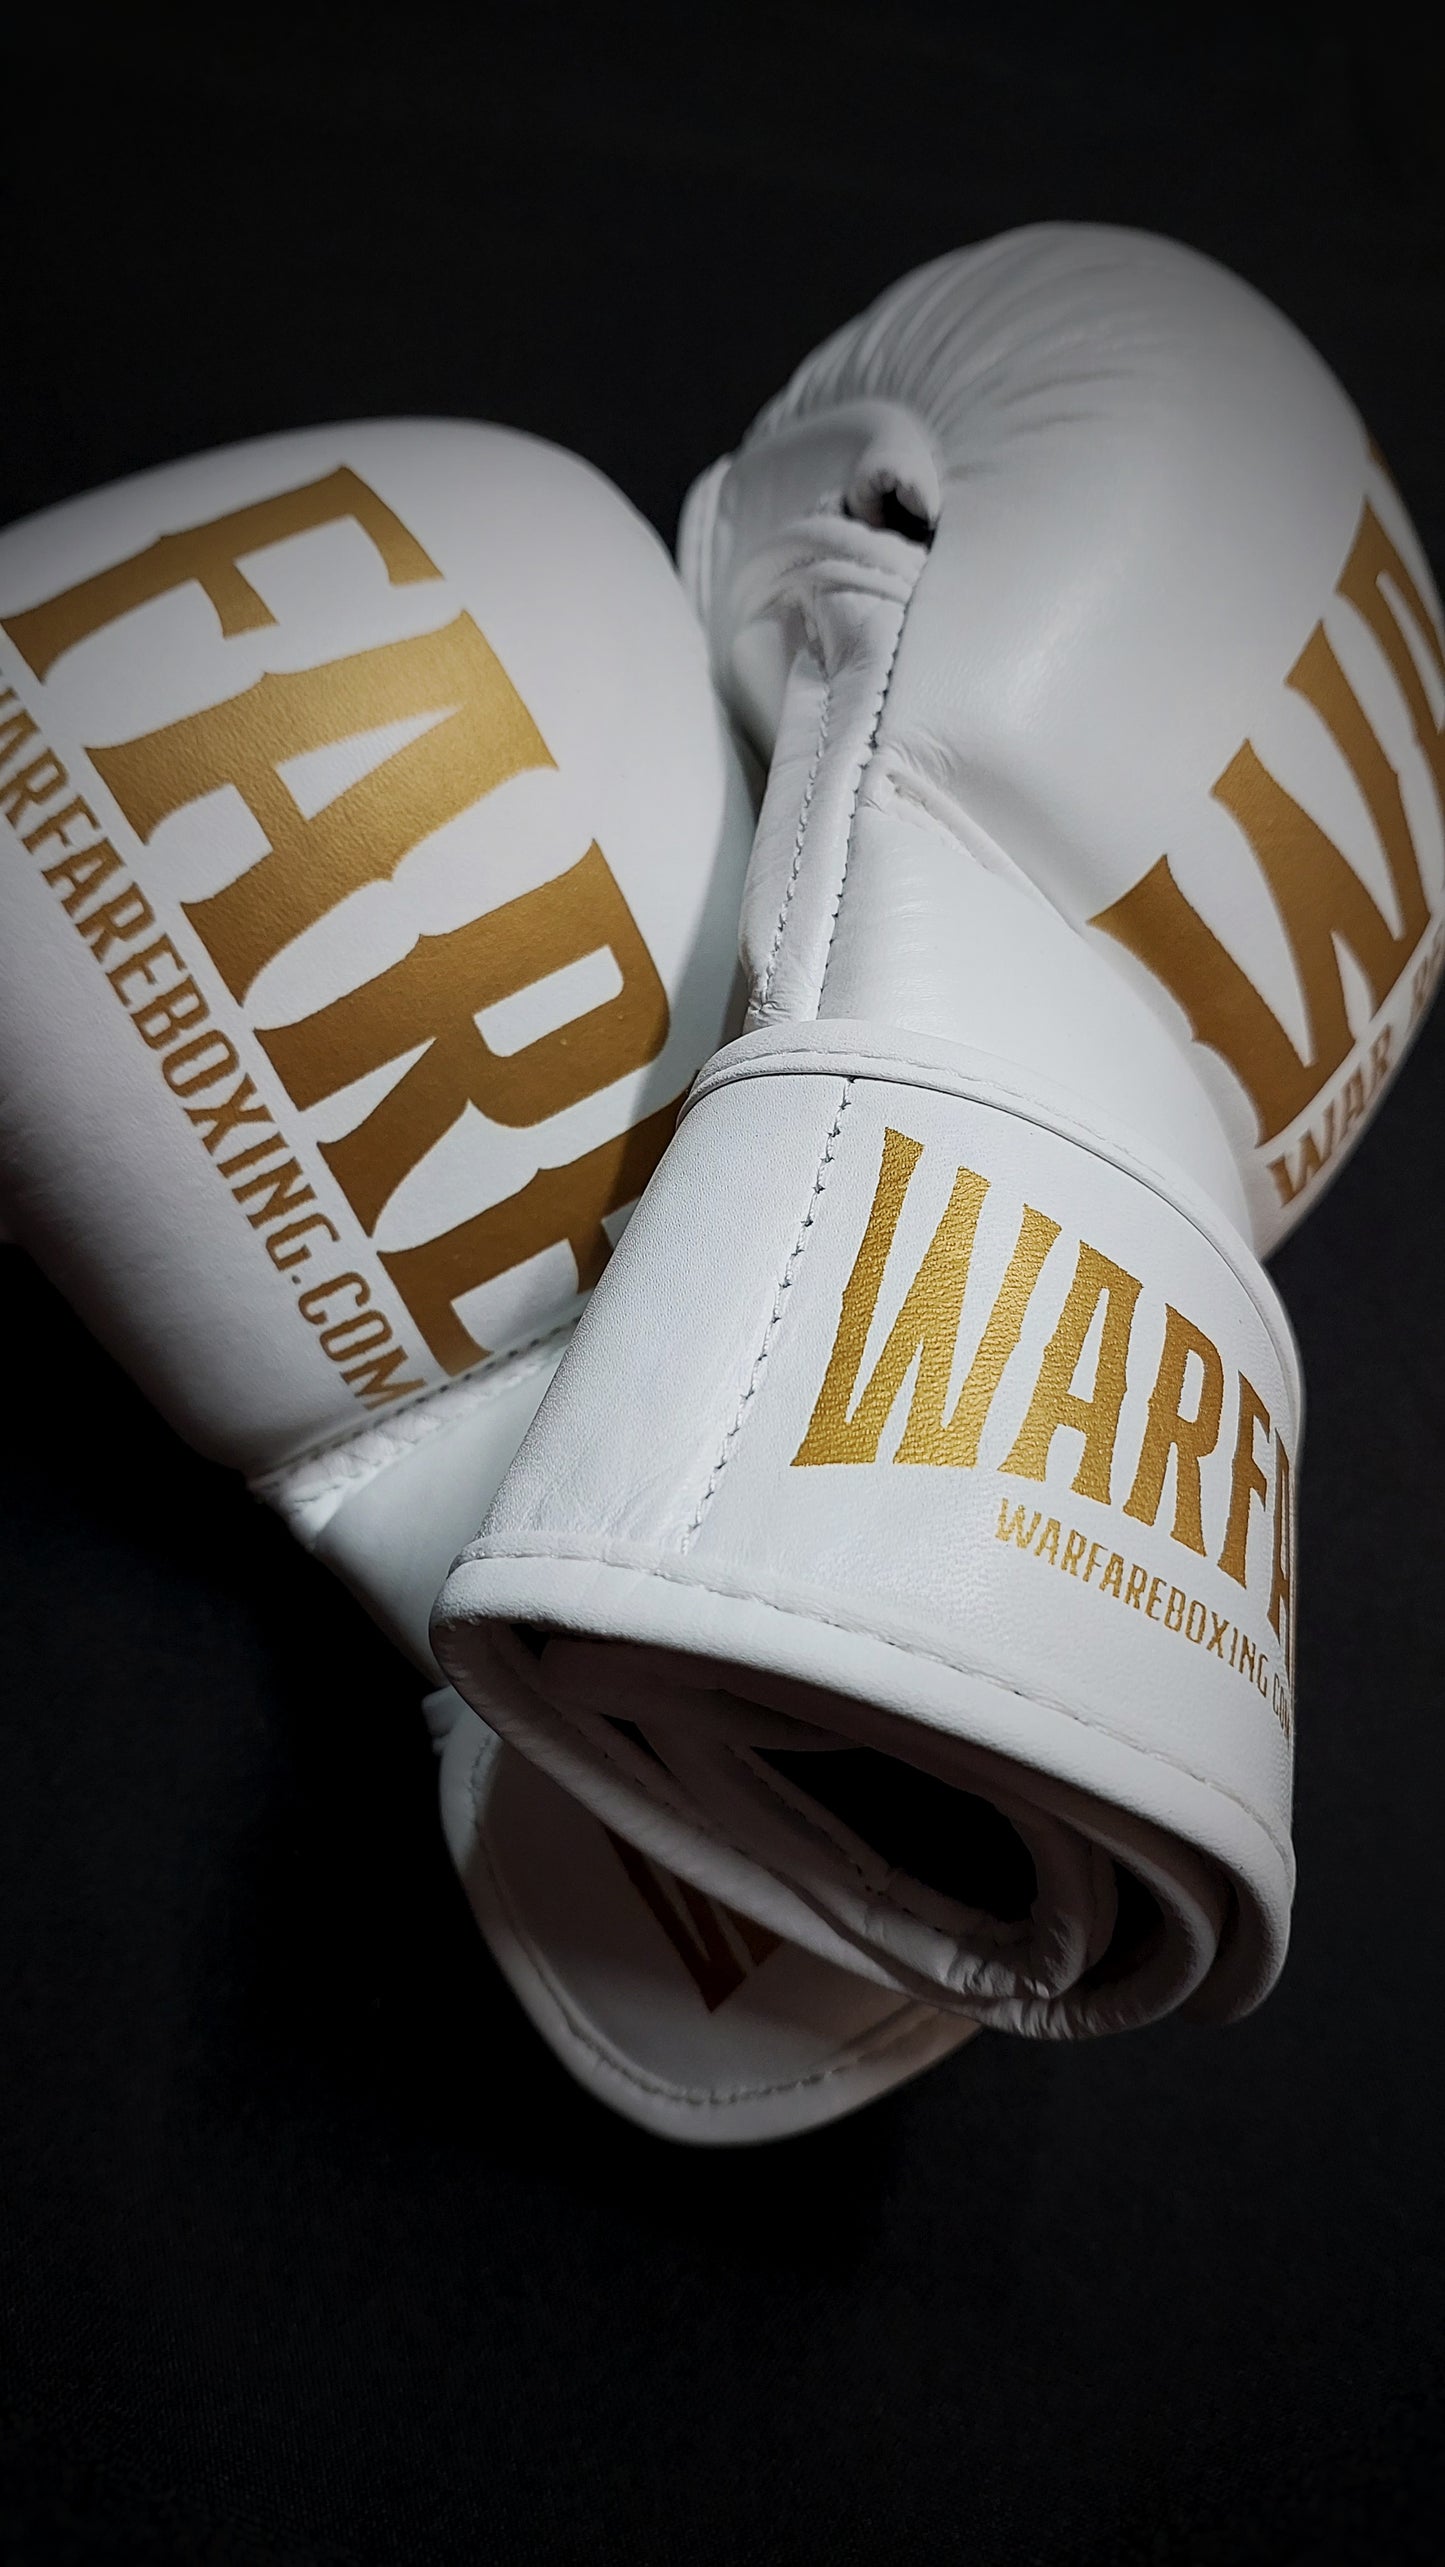 Warfare MMA Sparring Glove